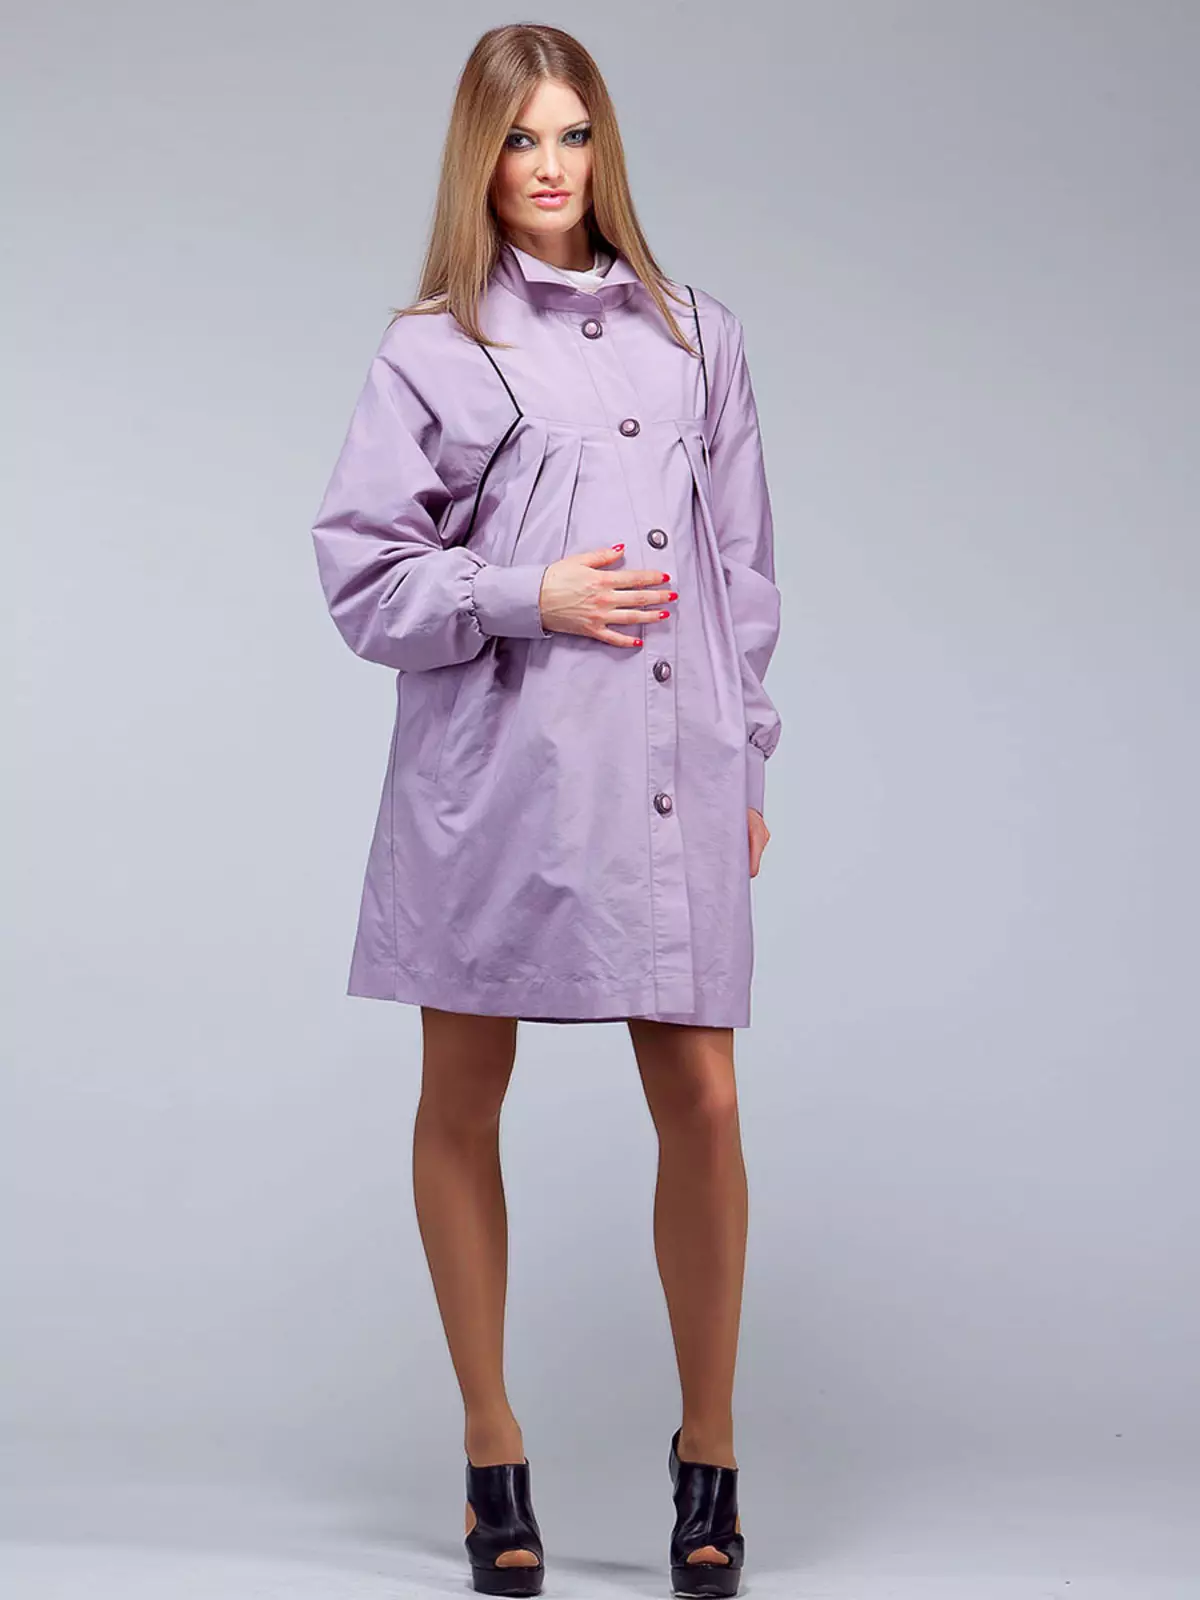 Manto para mulheres grávidas (40 fotos): casaco e casaco e capa de jaqueta por Adel, hm, modificador e doce mamãe 359_35